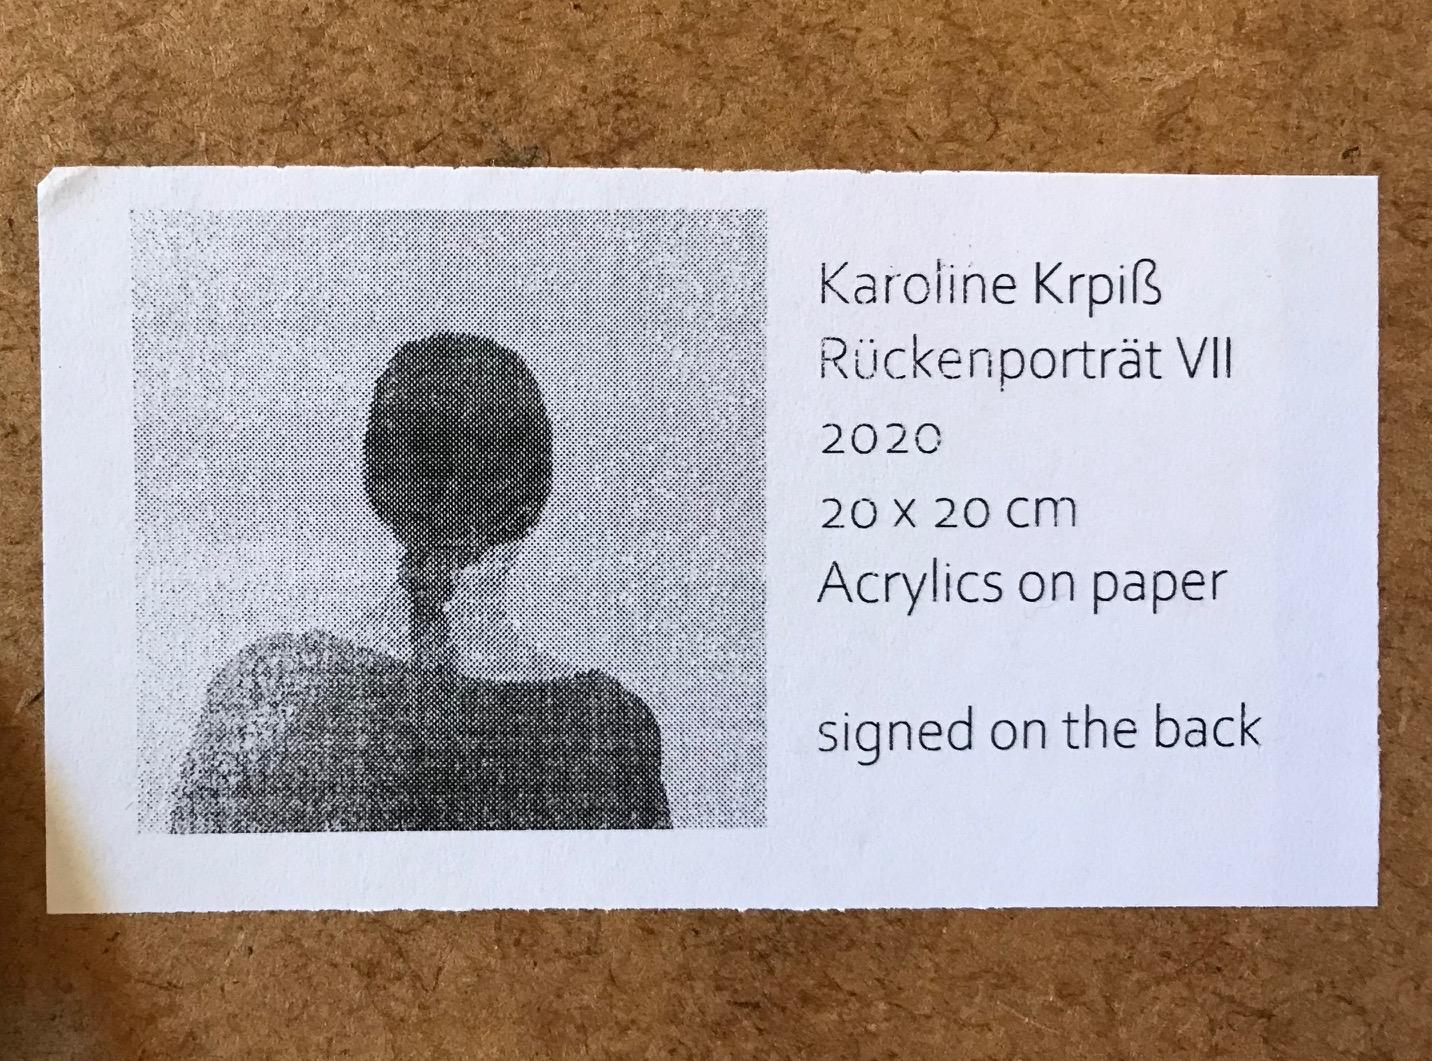 Karoline Kroiß (1975), née en Autriche, peint principalement des figures féminines réalistes à l'acrylique sur papier ou sur toile.

Les femmes de ses œuvres semblent perdues dans leurs pensées, des scènes sereines mises en valeur par le fond